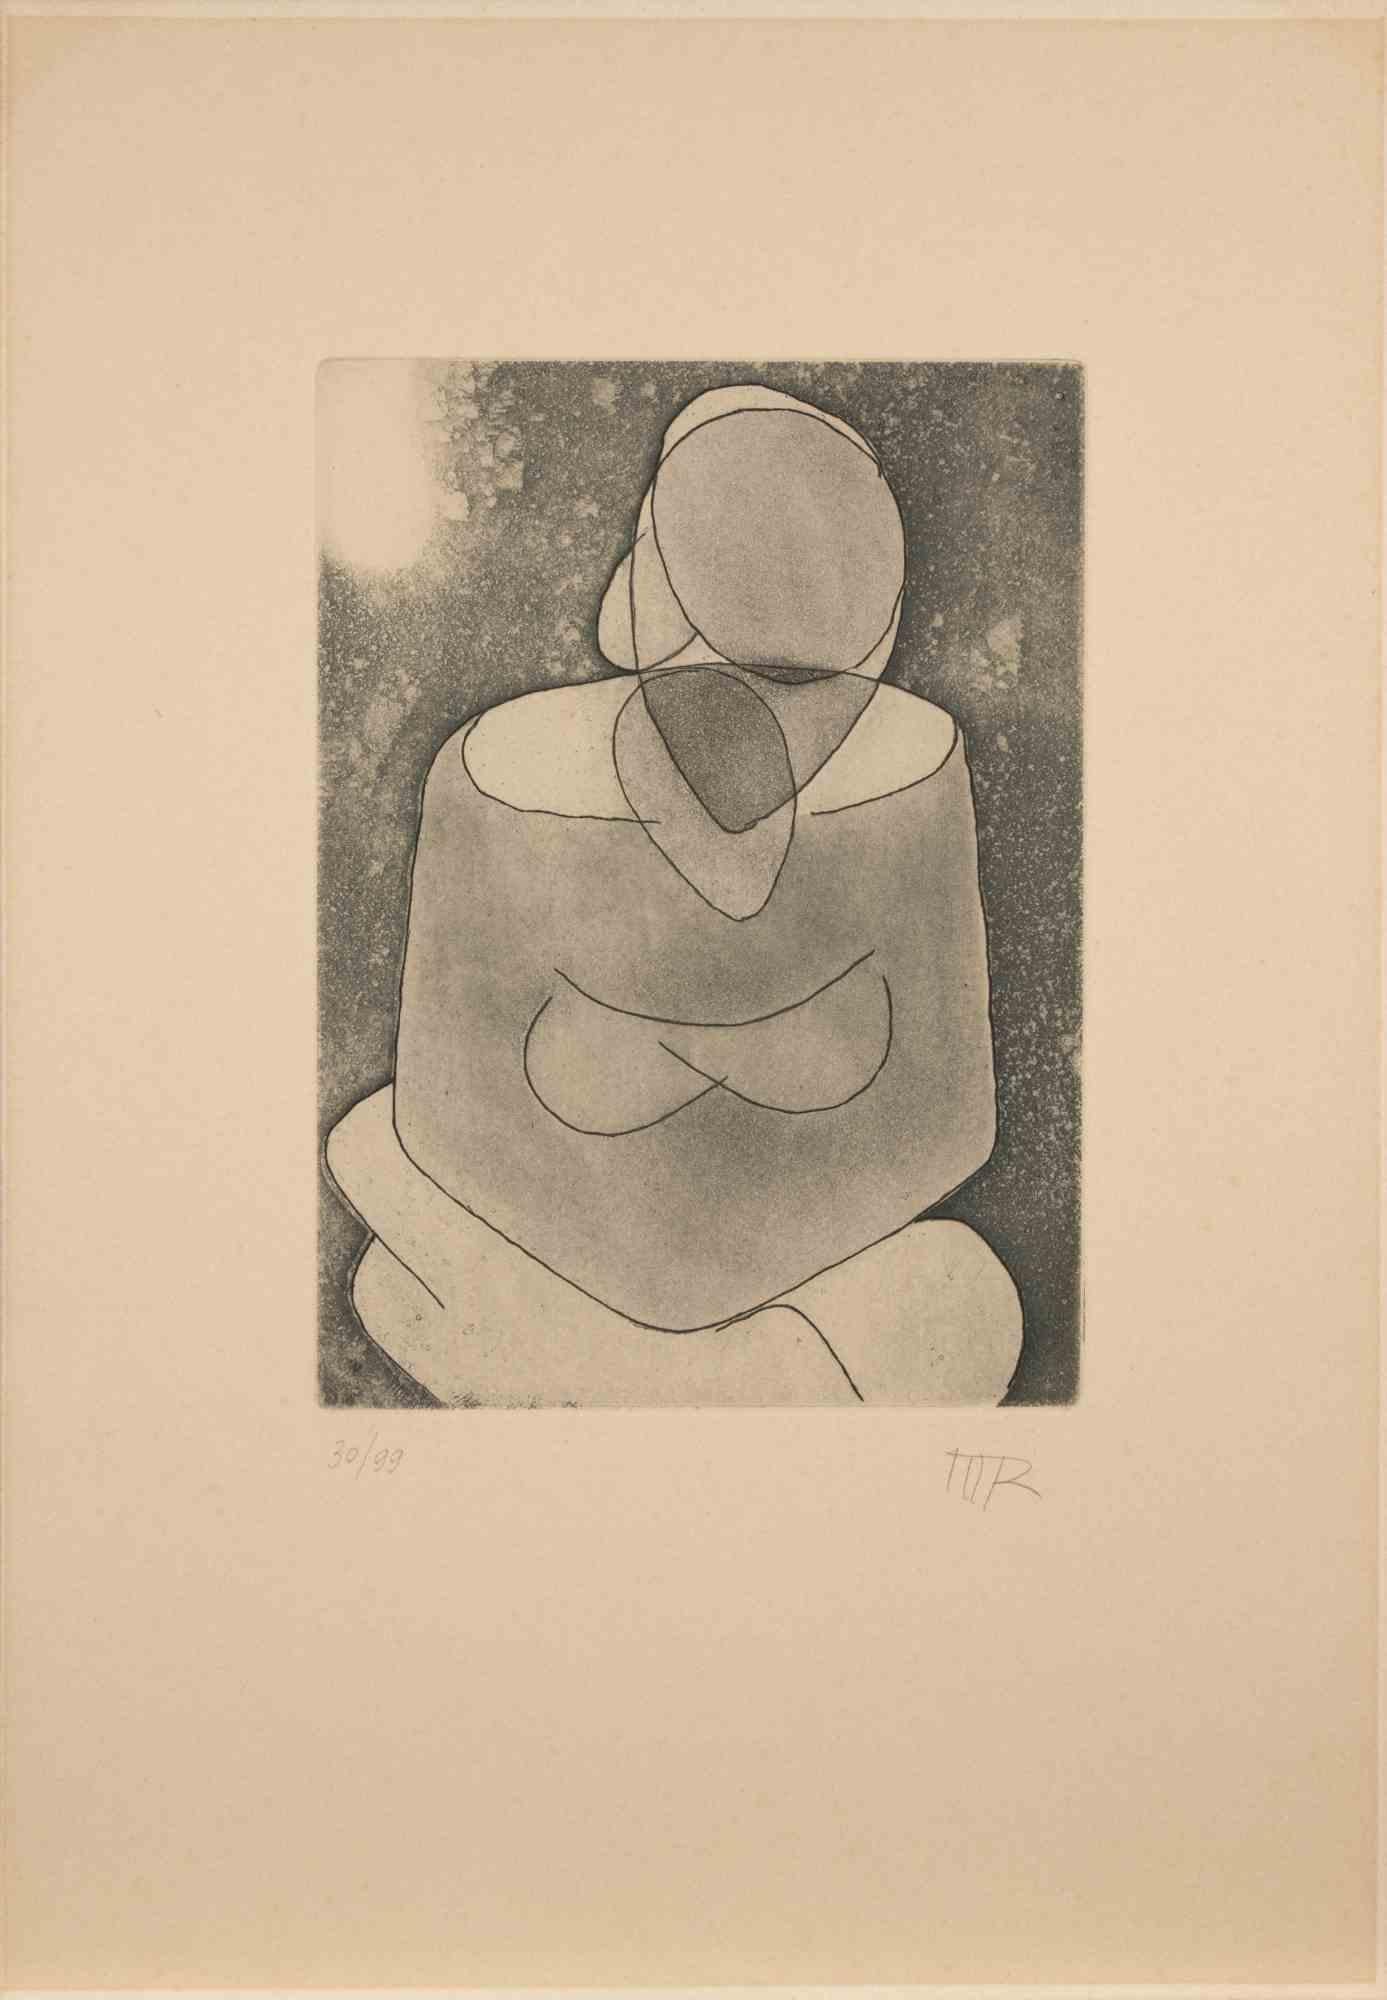 La femme est une œuvre d'art contemporain réalisée par Man Ray en 1968.

Aquatinte en noir et blanc.

Initiales de l'artiste dans la marge inférieure.

Numéroté en bas à gauche. Édition de 30/99.

Réf. Marconi. Vol. I+I 49